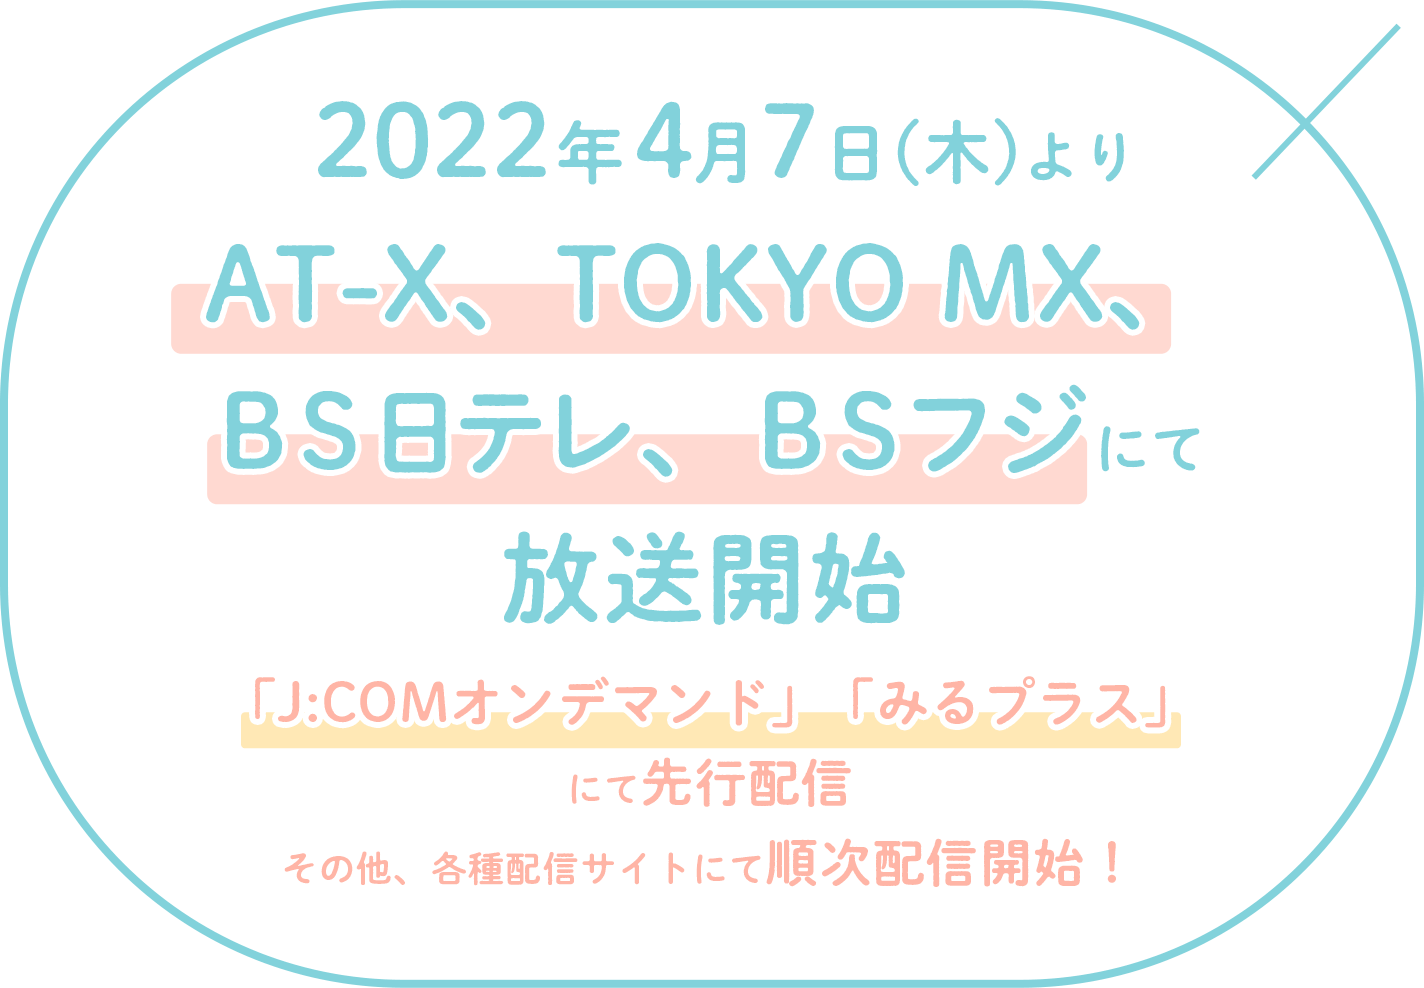 「2022年4月よりAT-X、TOKYO MX、BS日テレ、BSフジにて放送開始」!